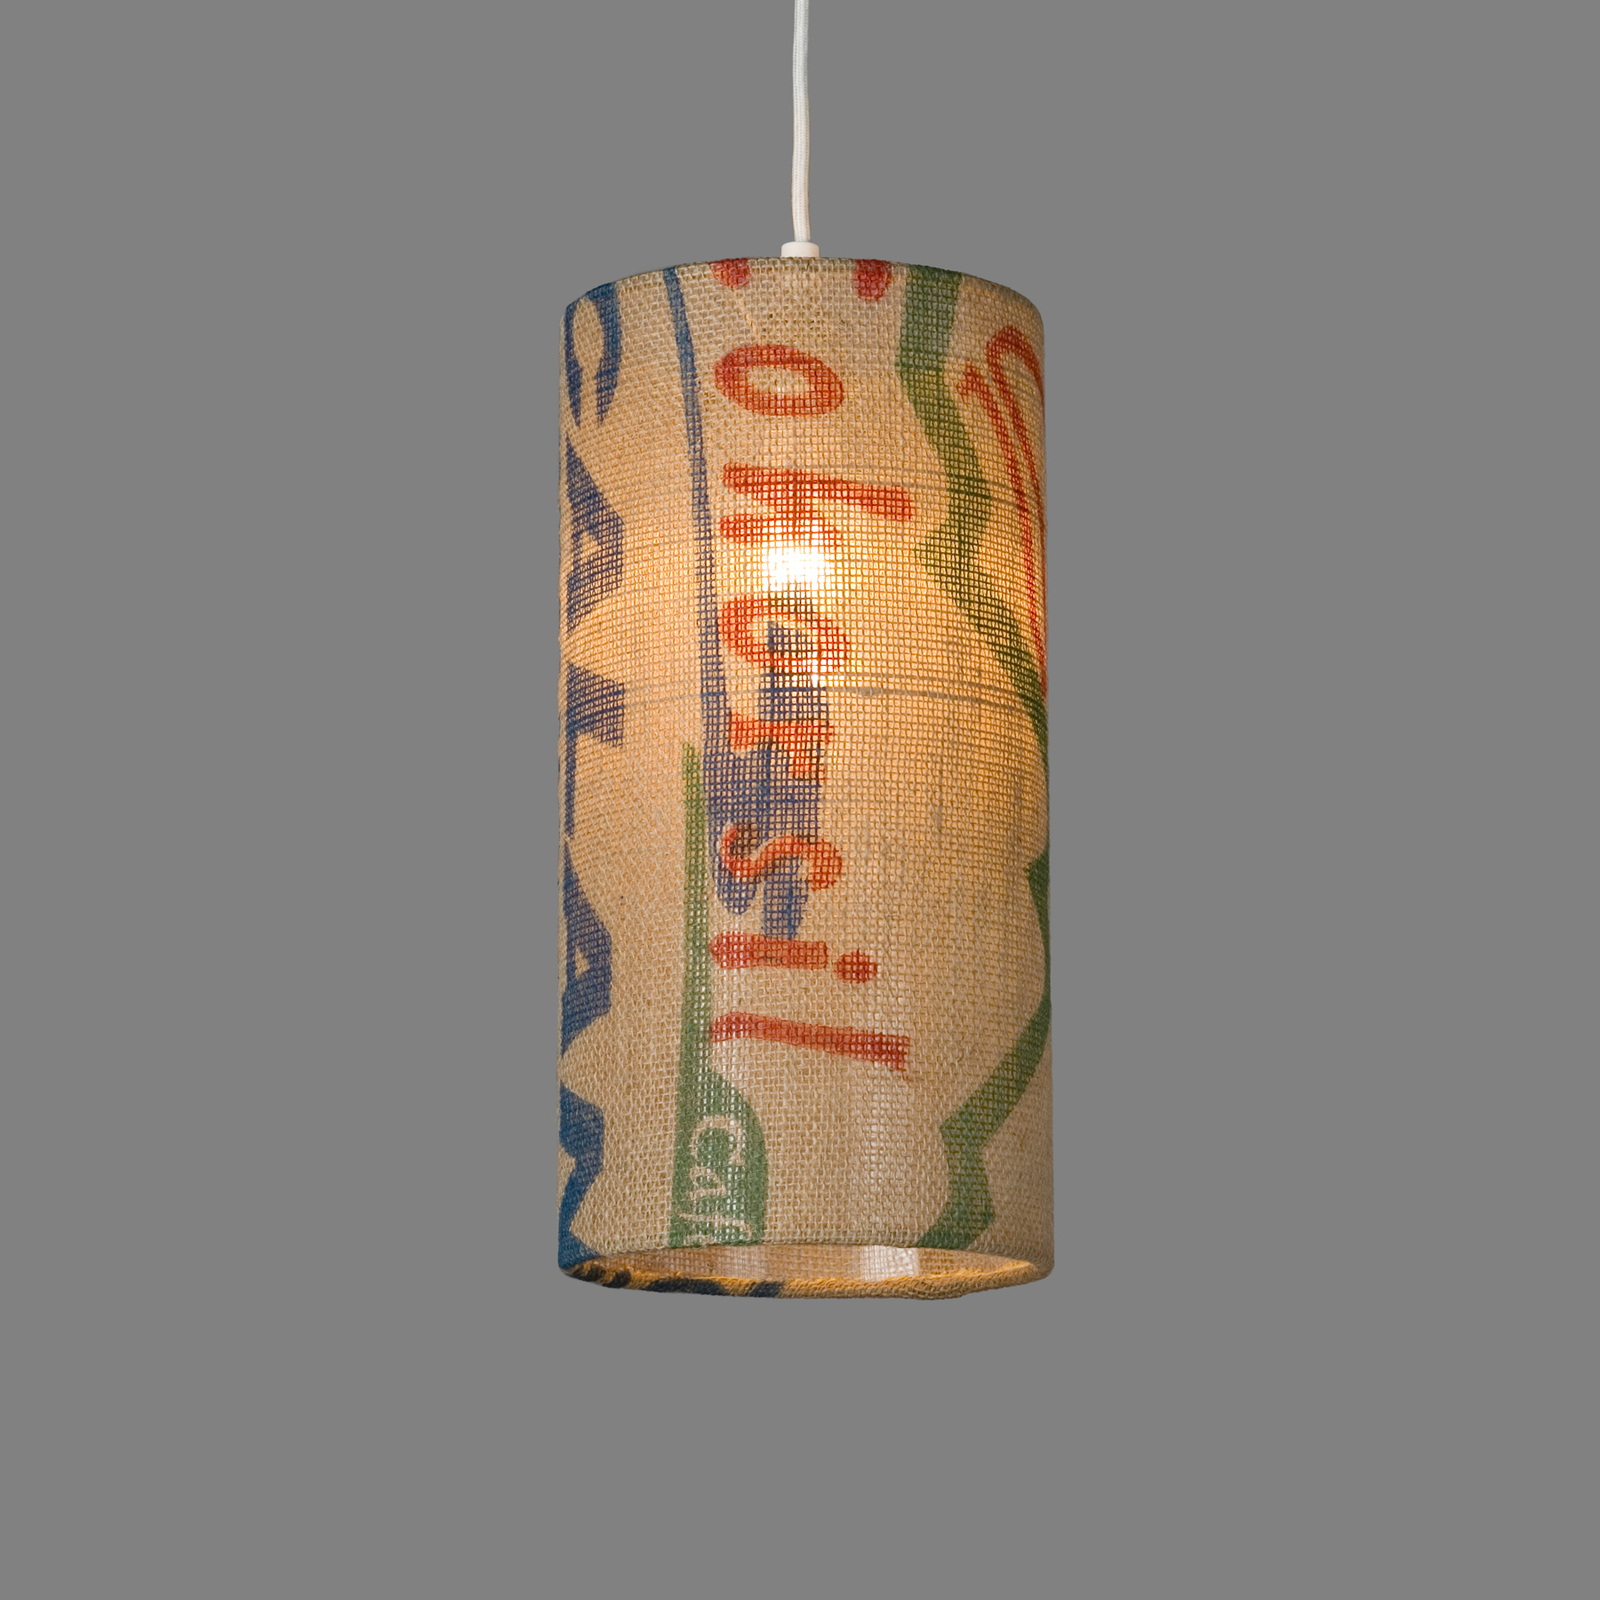 Függő lámpa N°91 Perlbohne Jute kávézacskóból